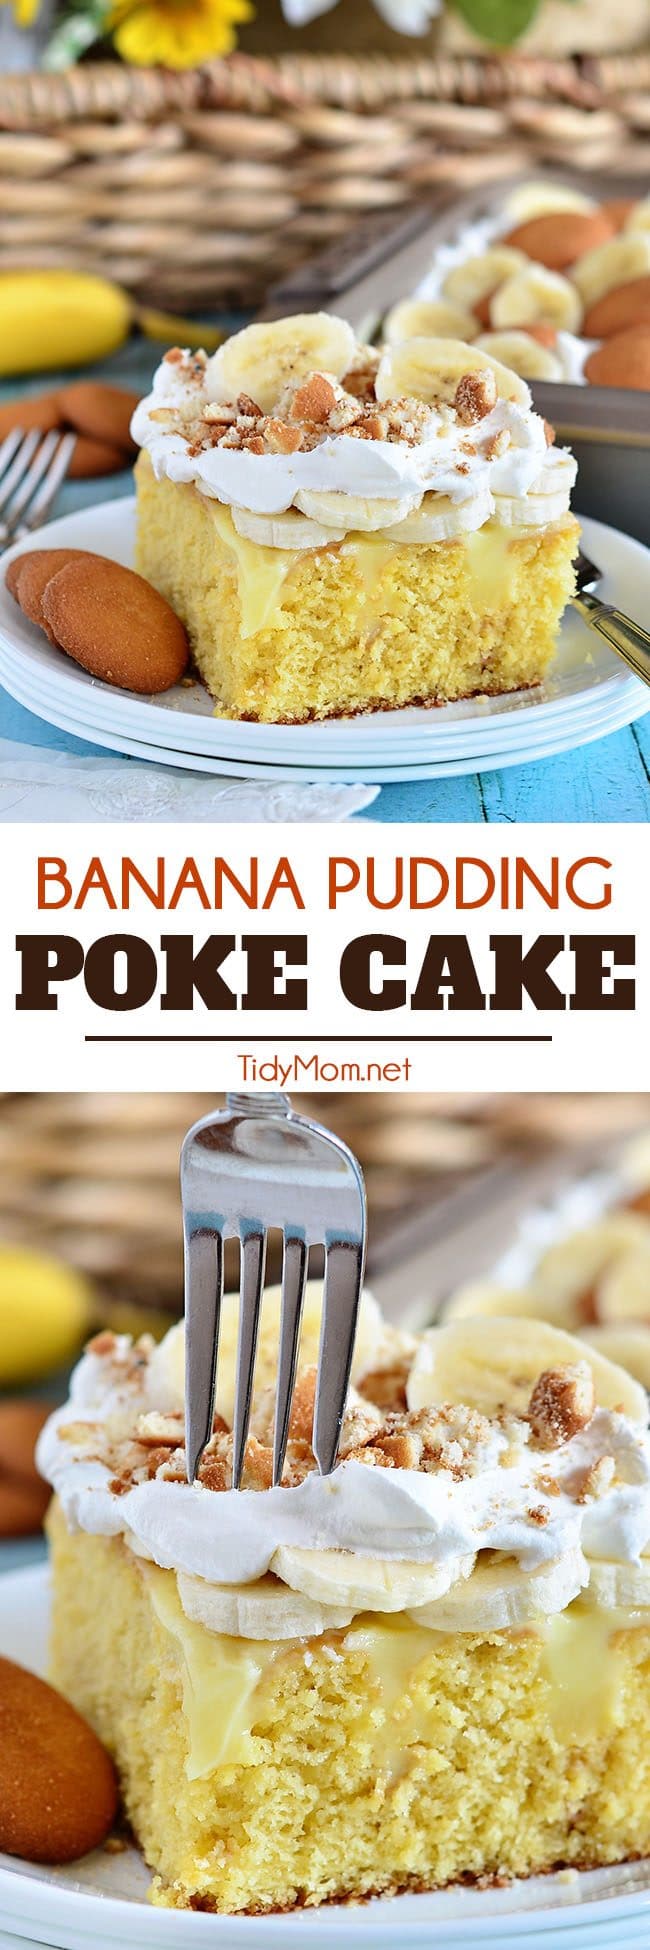 Banana Pudding Poke Cake photo collage